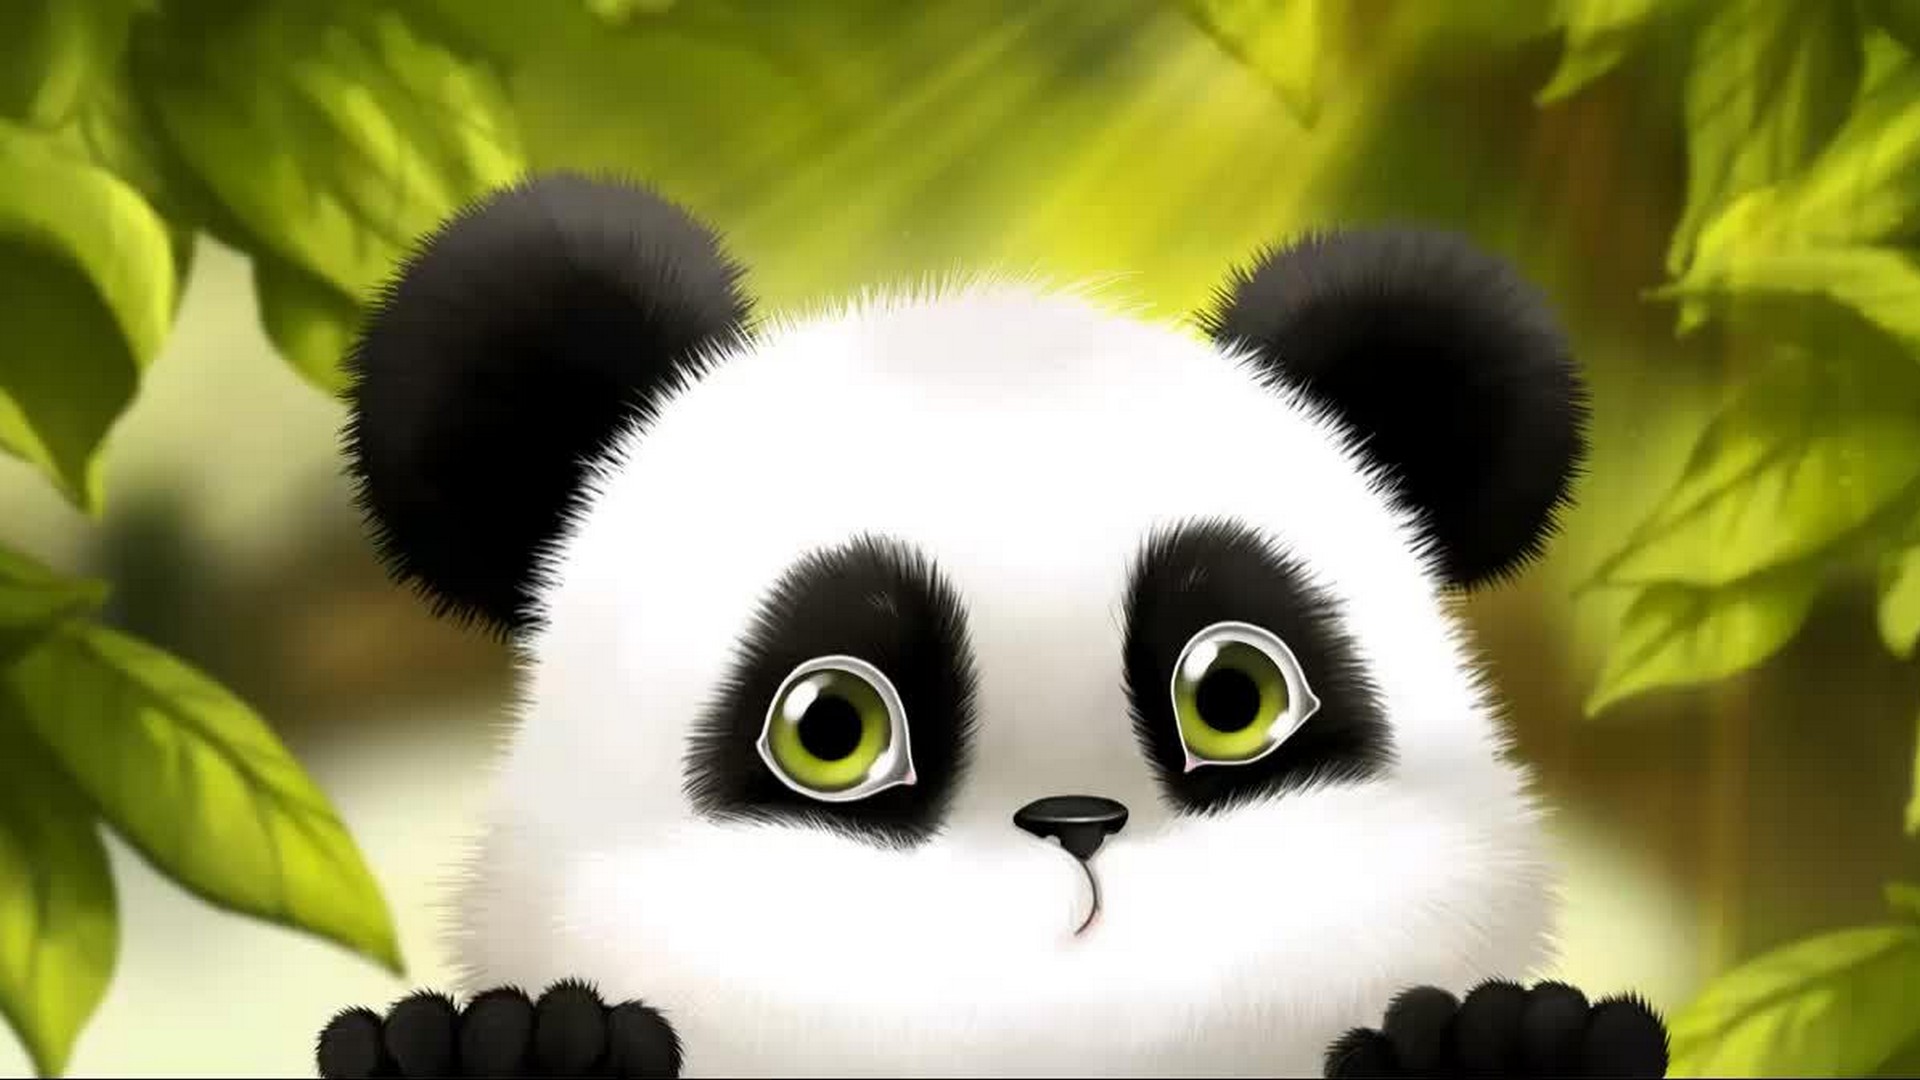 Cute Baby Panda Cartoon Wallpaper